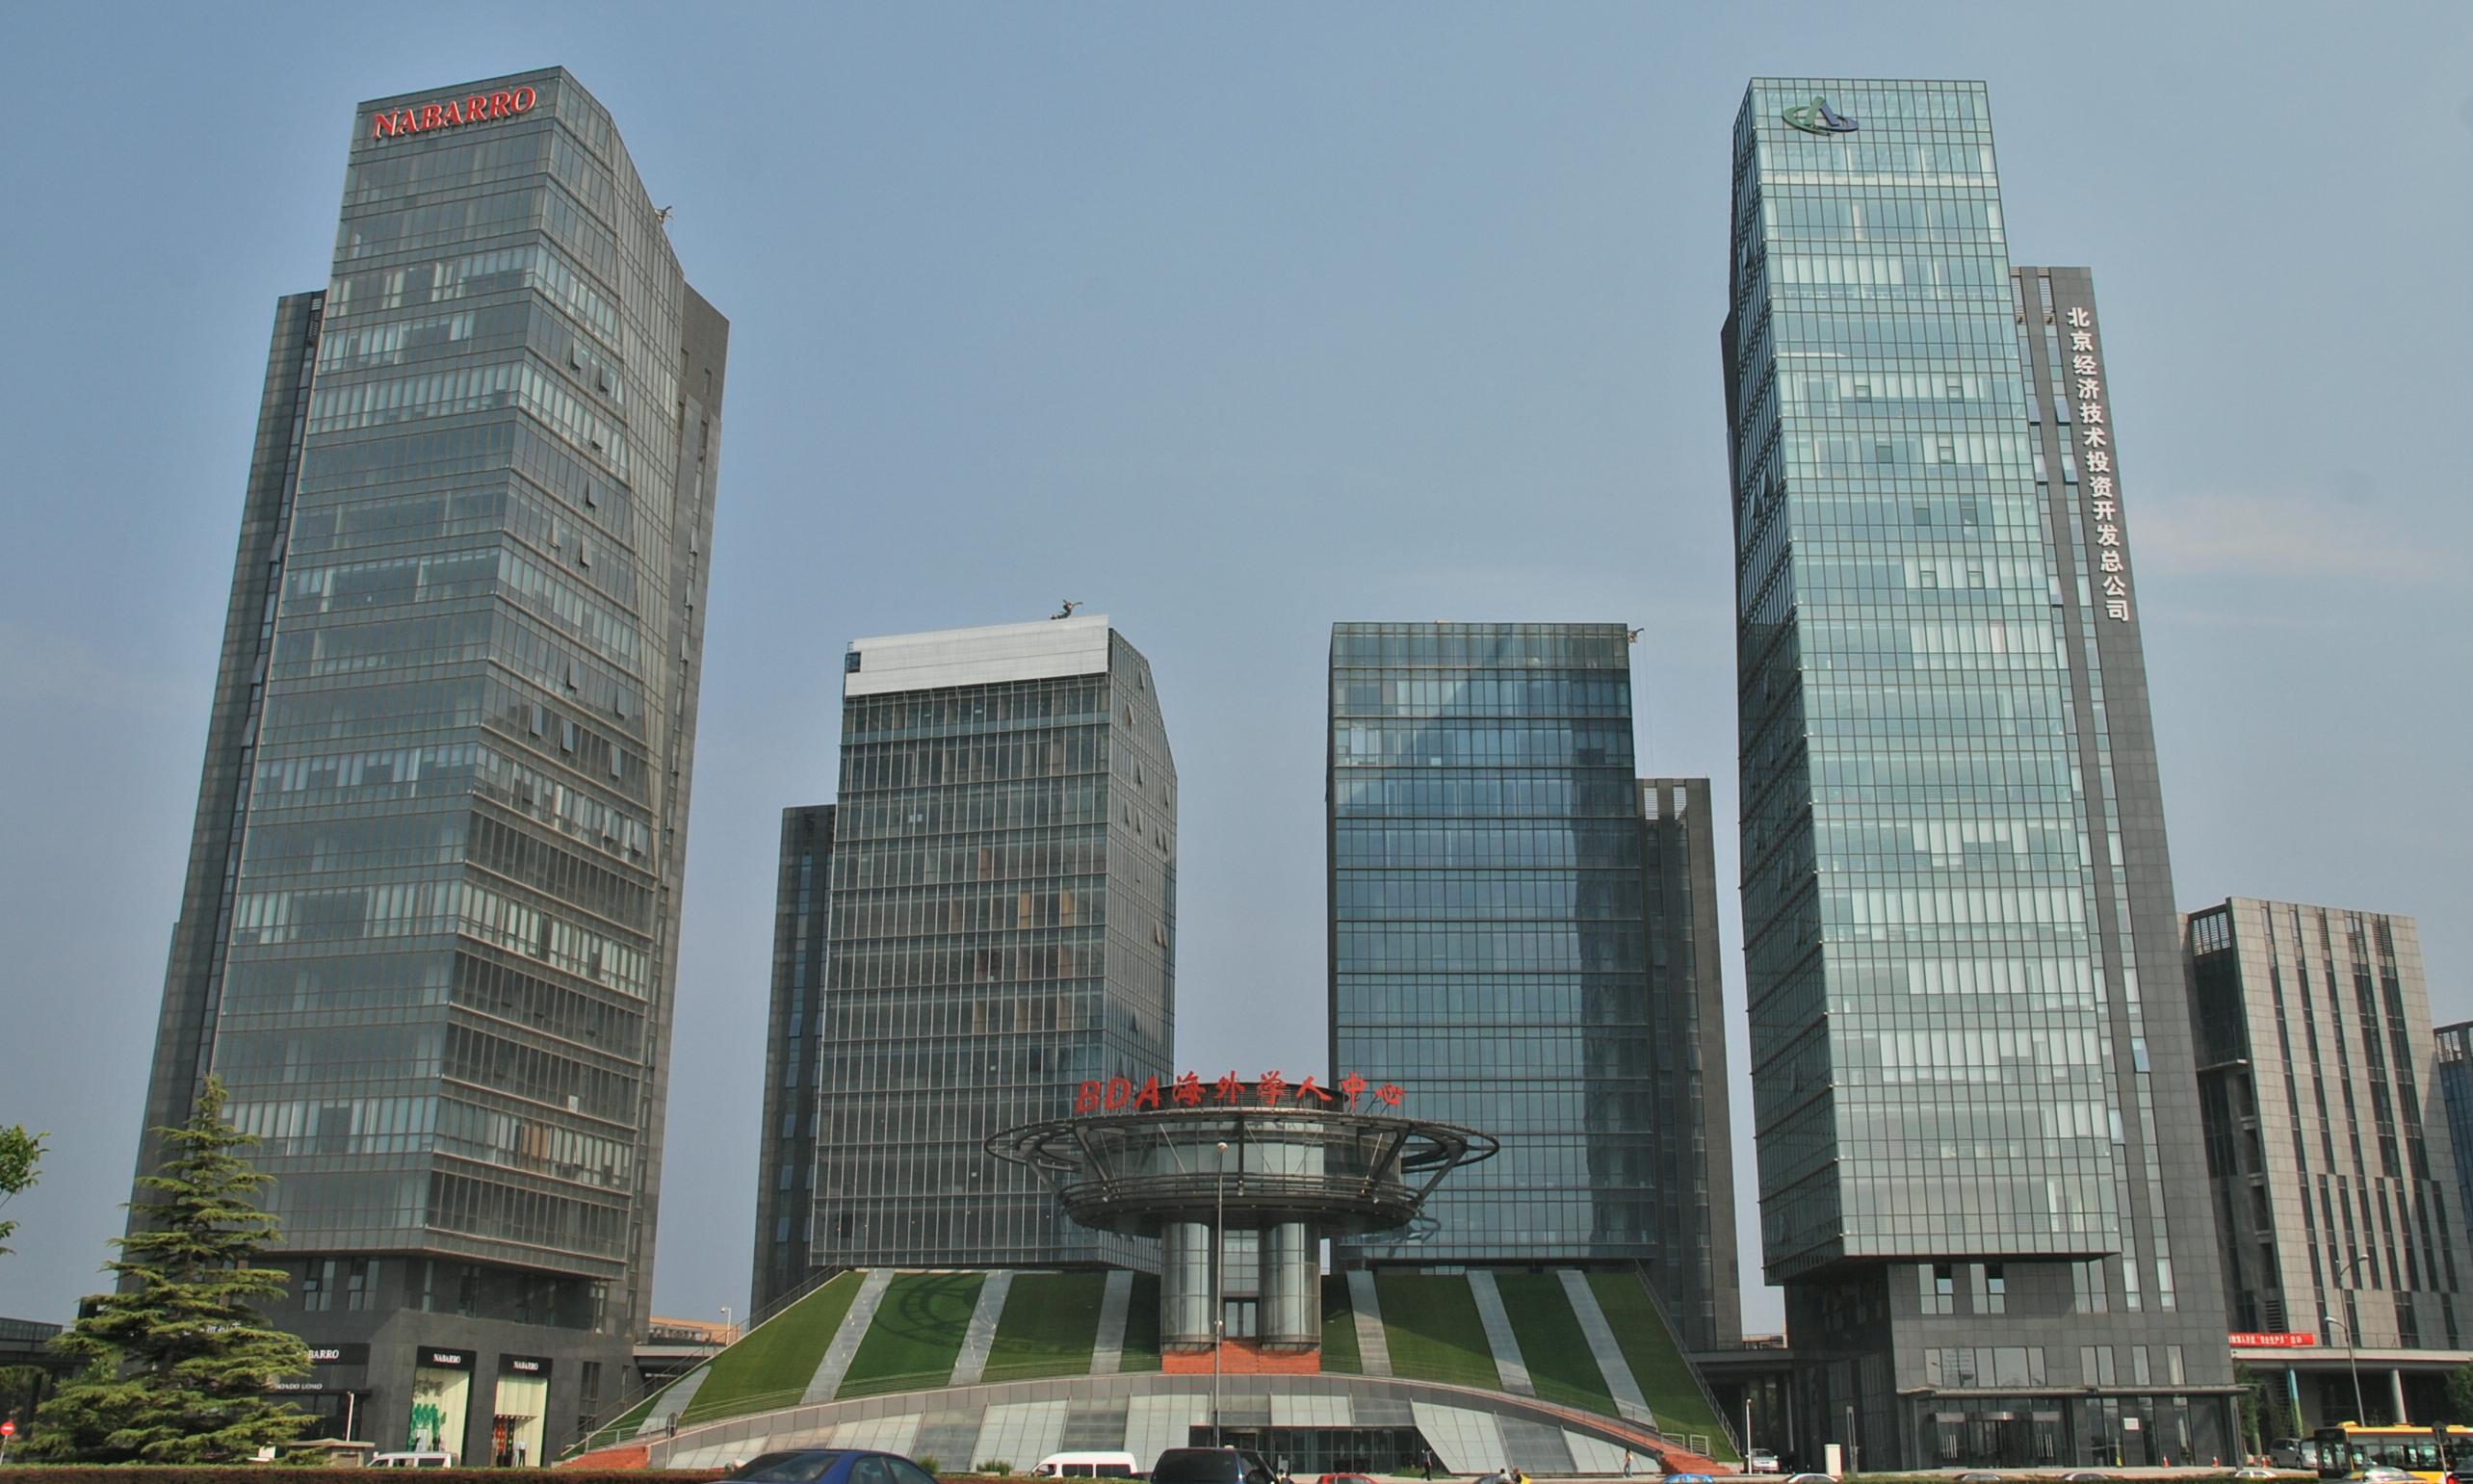 北京經濟技術投資開發總公司